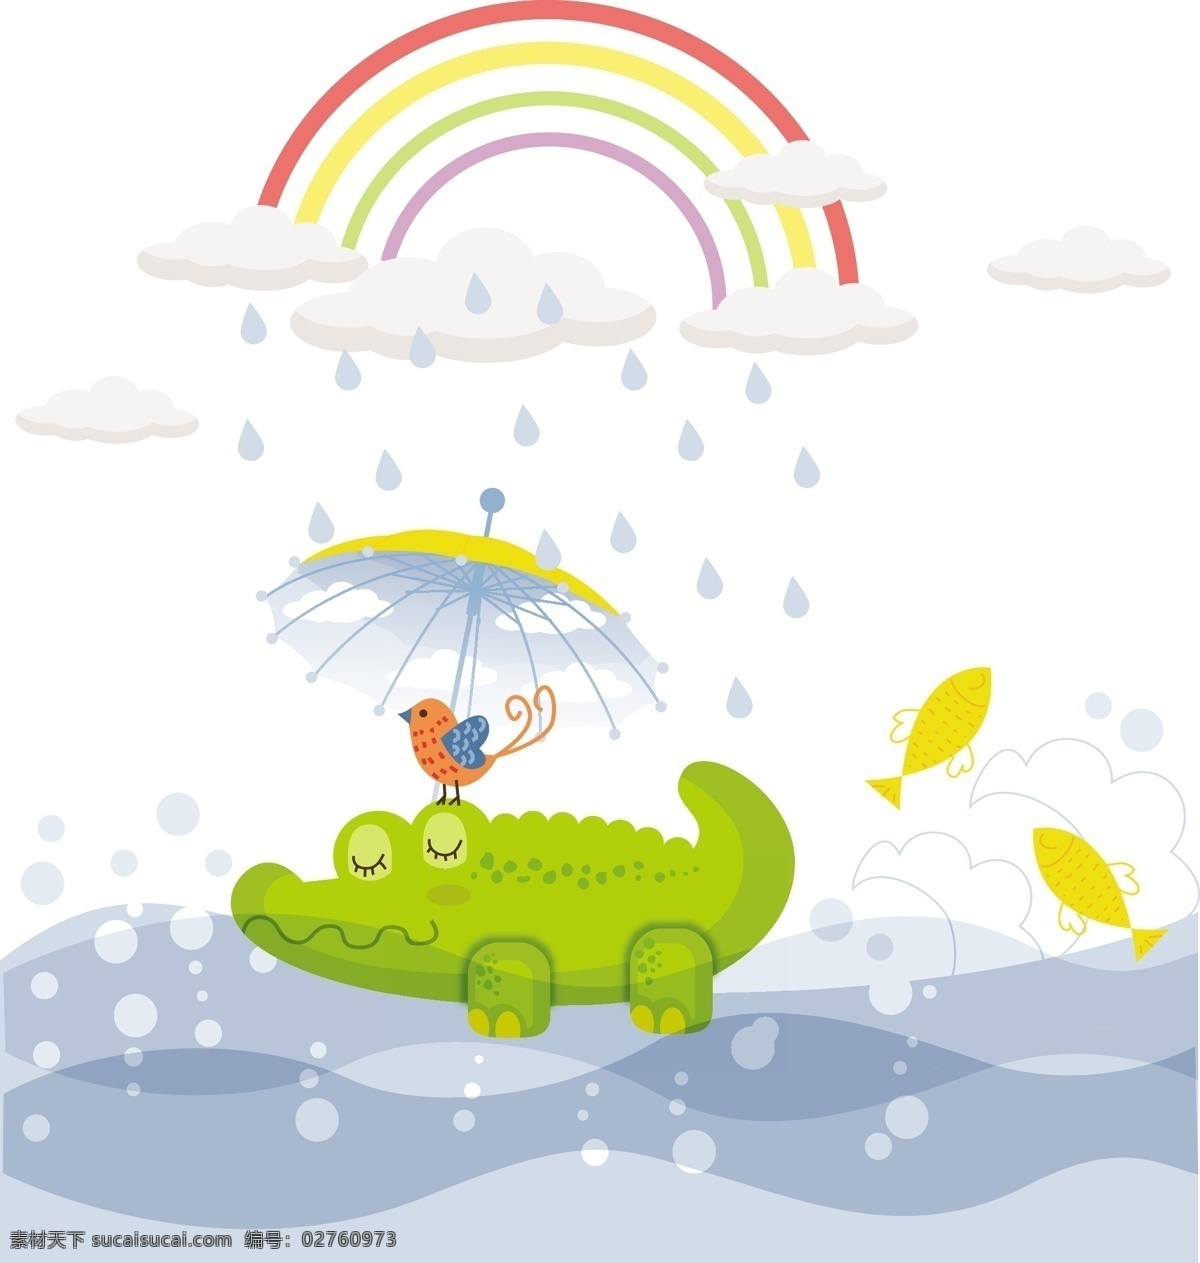 童趣 鳄鱼 插画 eps格式 彩虹 河流 卡通 鸟 矢量图 鱼 雨滴 绿色 矢量 雨伞 其他矢量图